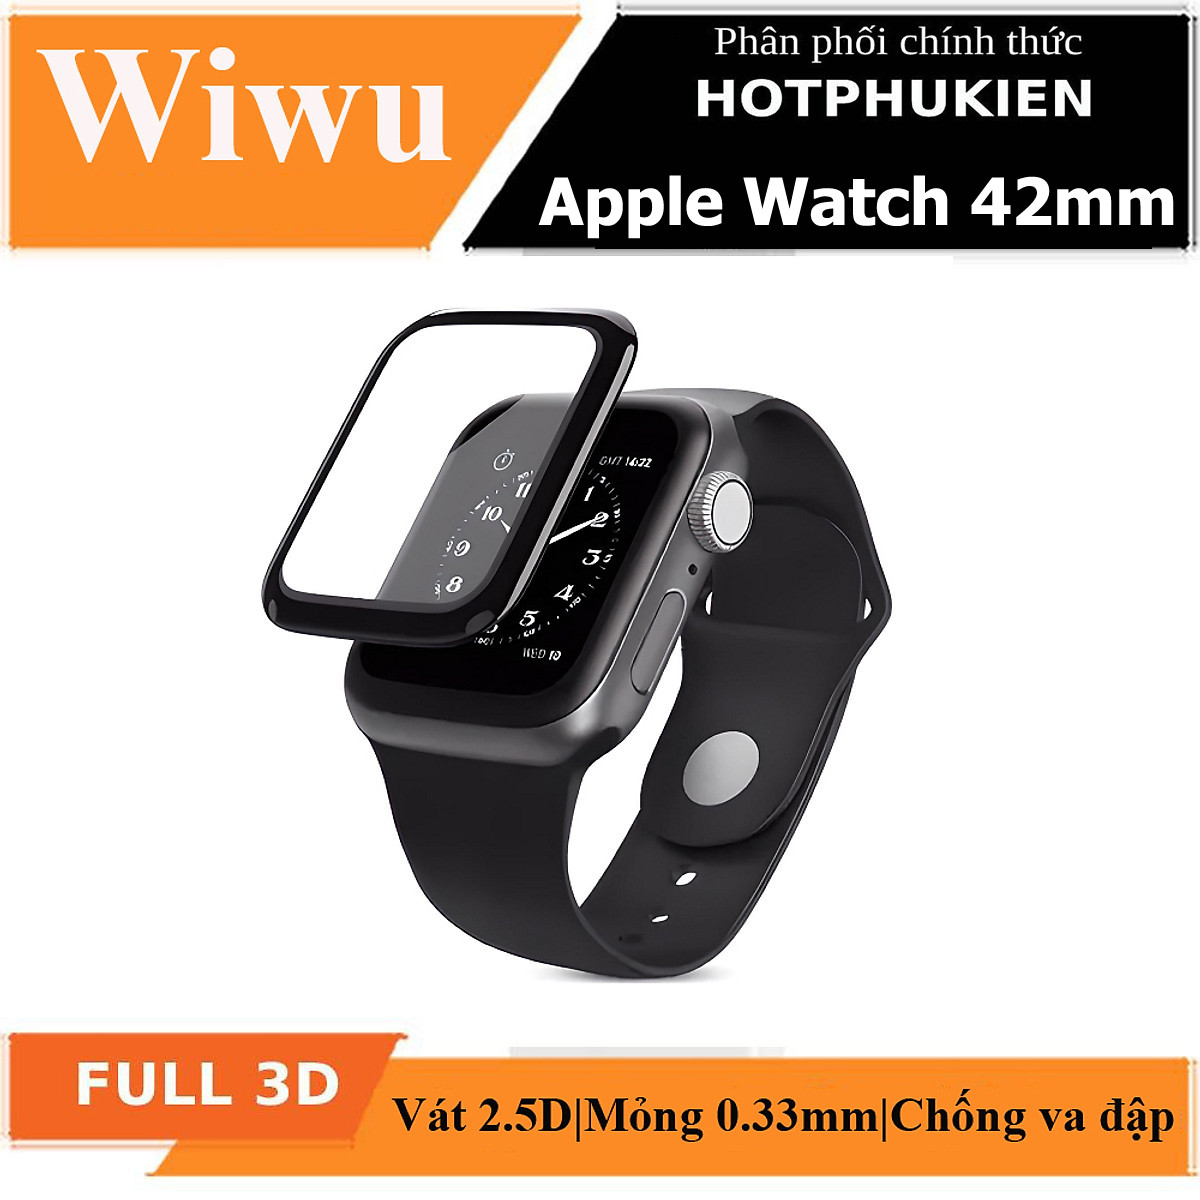 Bộ 2 miếng dán màn hình kính cường lực Full 3D cho Apple Watch 42mm hiệu WIWU iVista